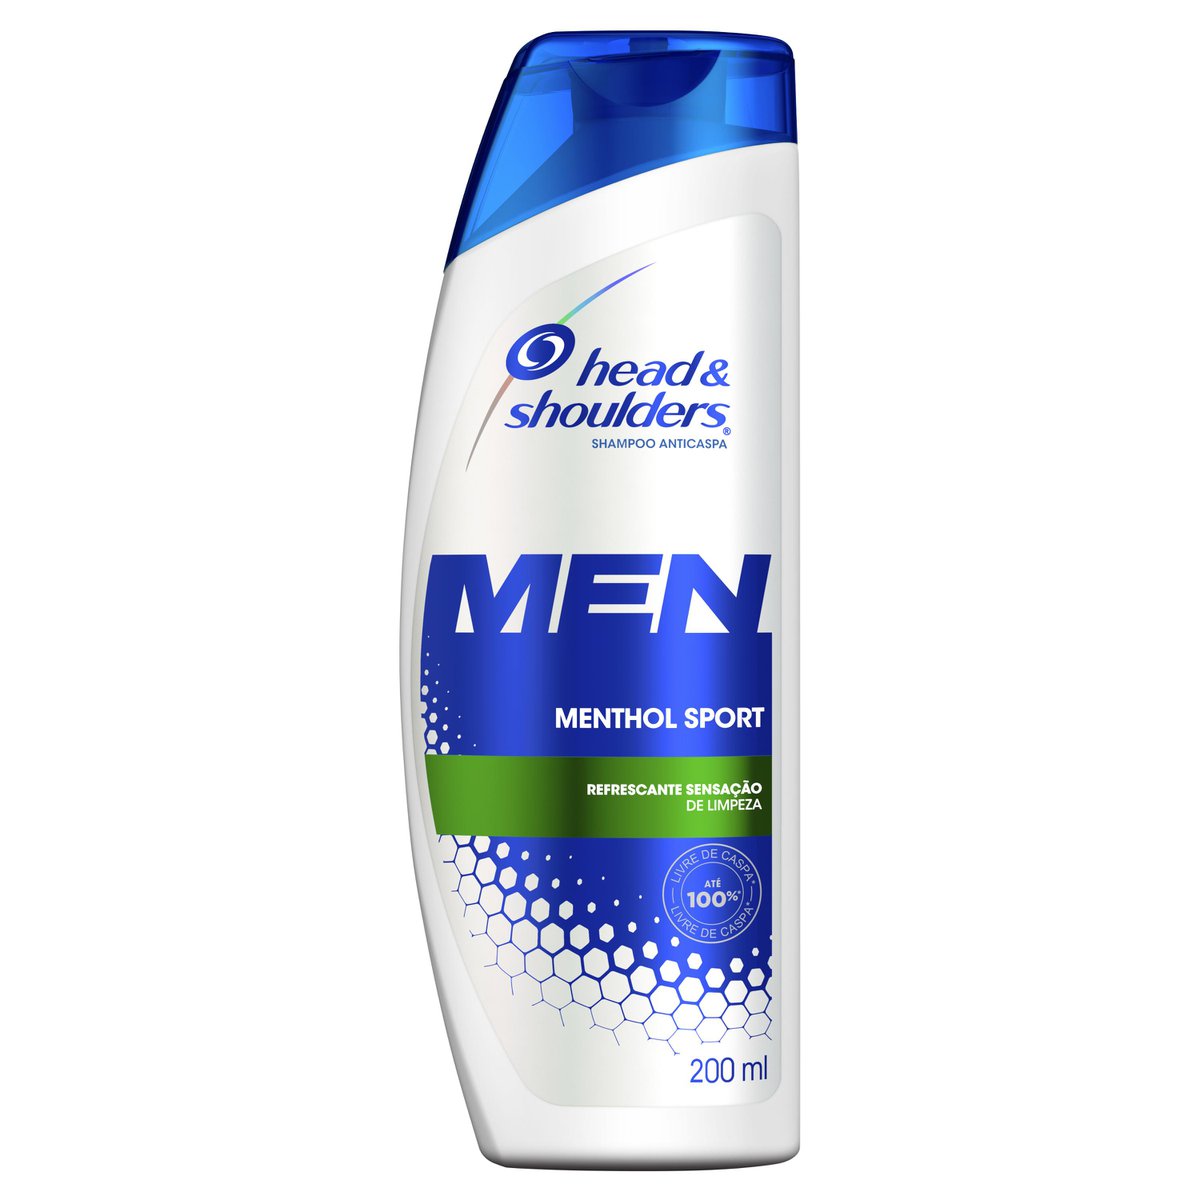 shampoo-de-cuidados-com-a-raiz-head-&-shoulders-men-menthol-sport-200ml-1.jpg